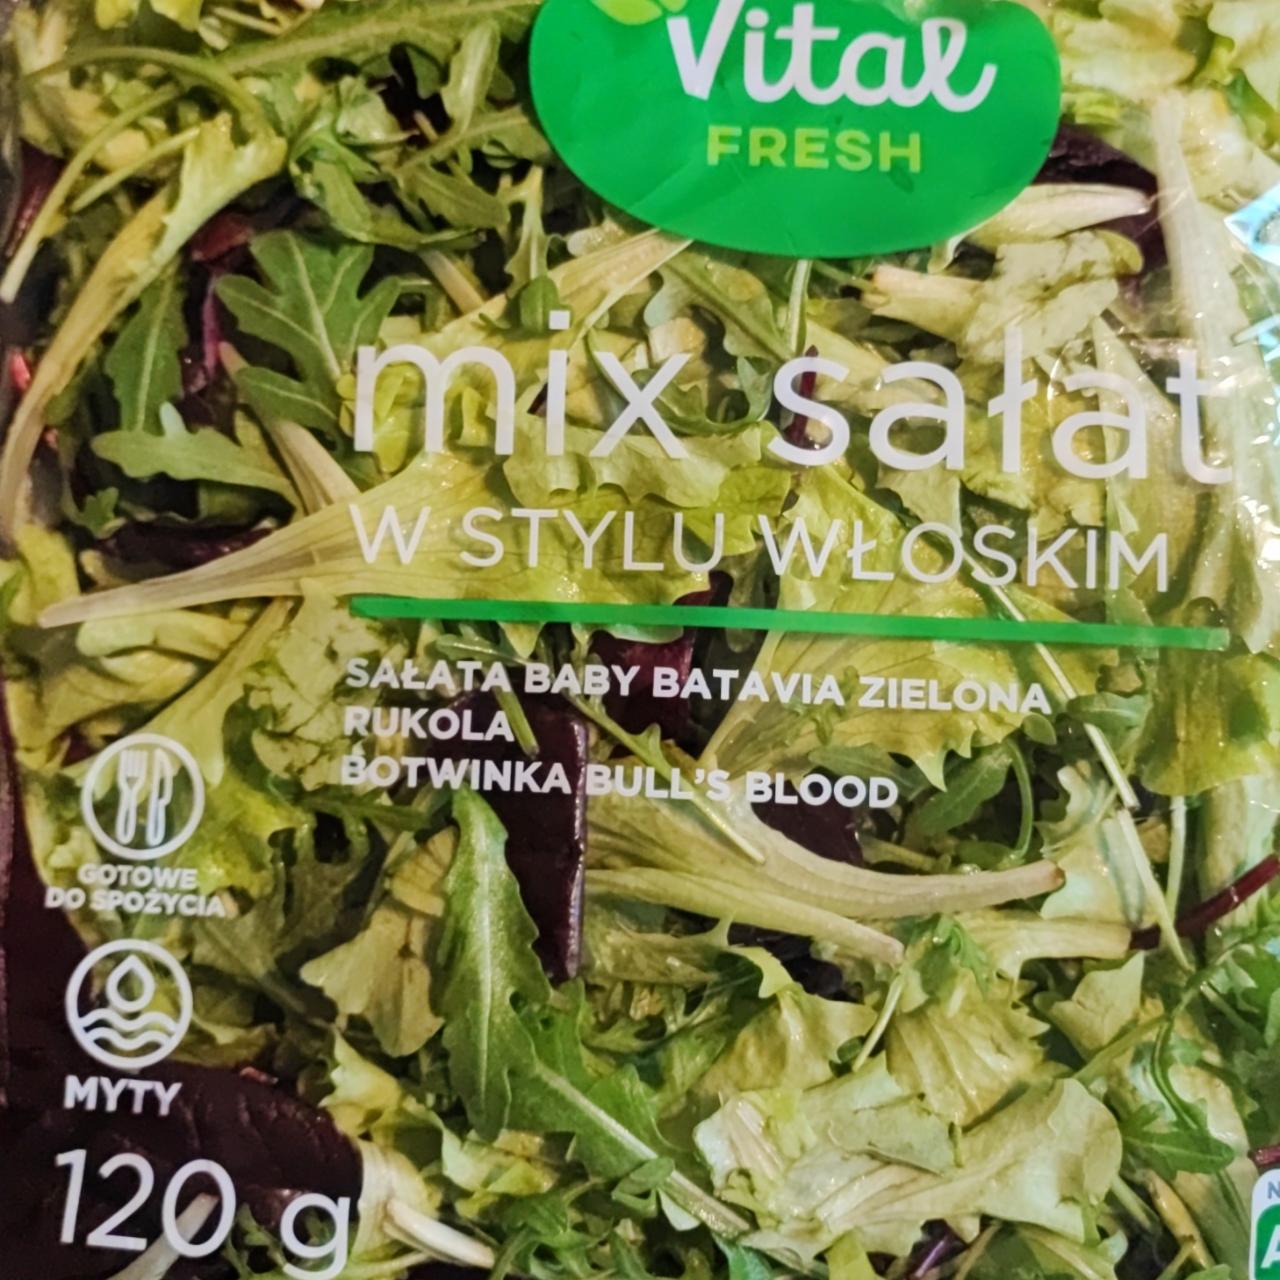 Zdjęcia - Mix sałat w stylu włoskim Vital fresh